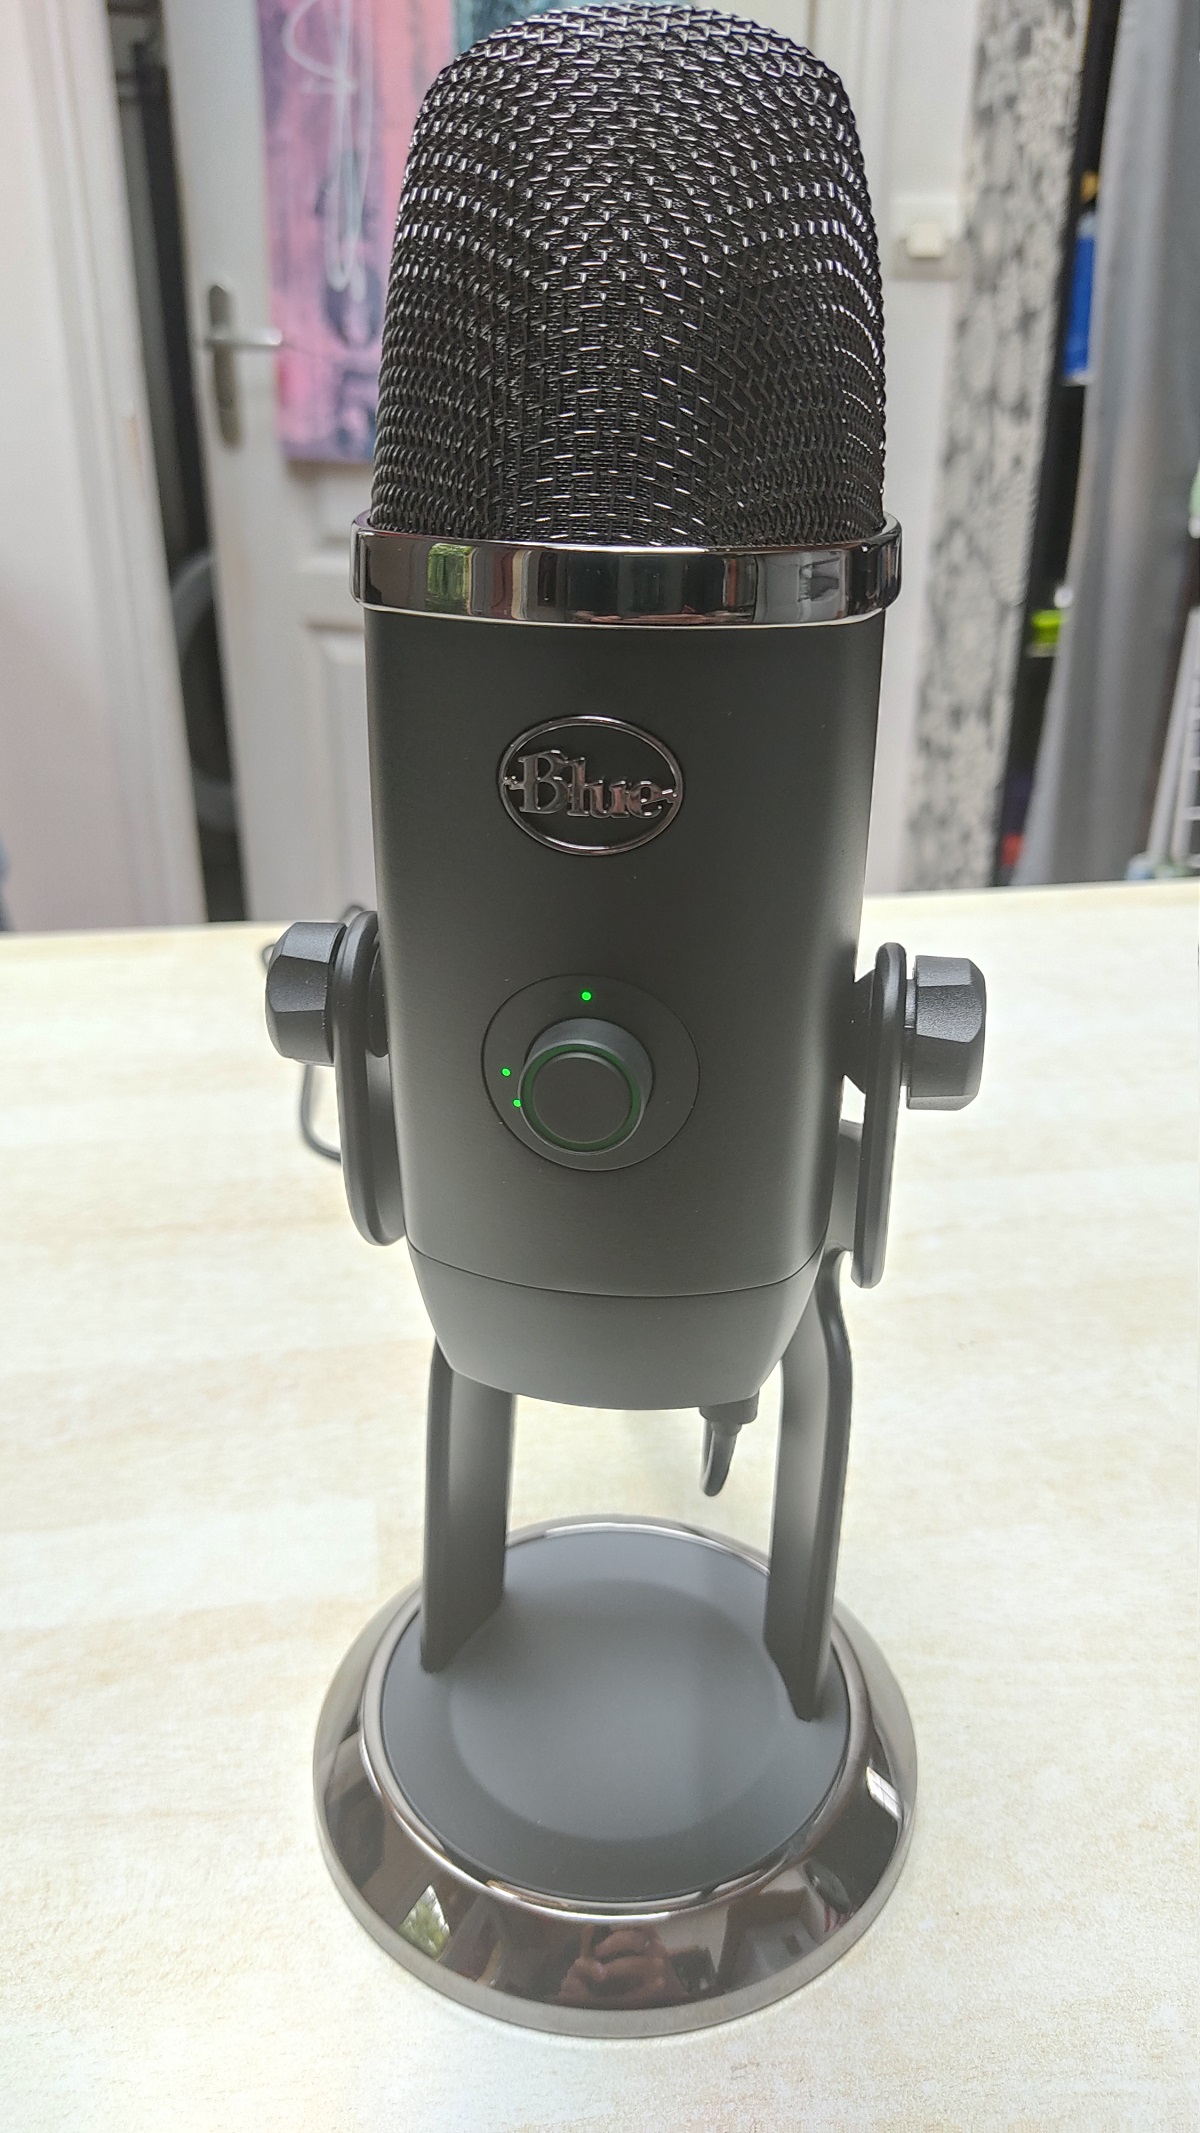 TEST du Blue Yeti X : quatre directivités pour un microphone polyvalent et  réussi 